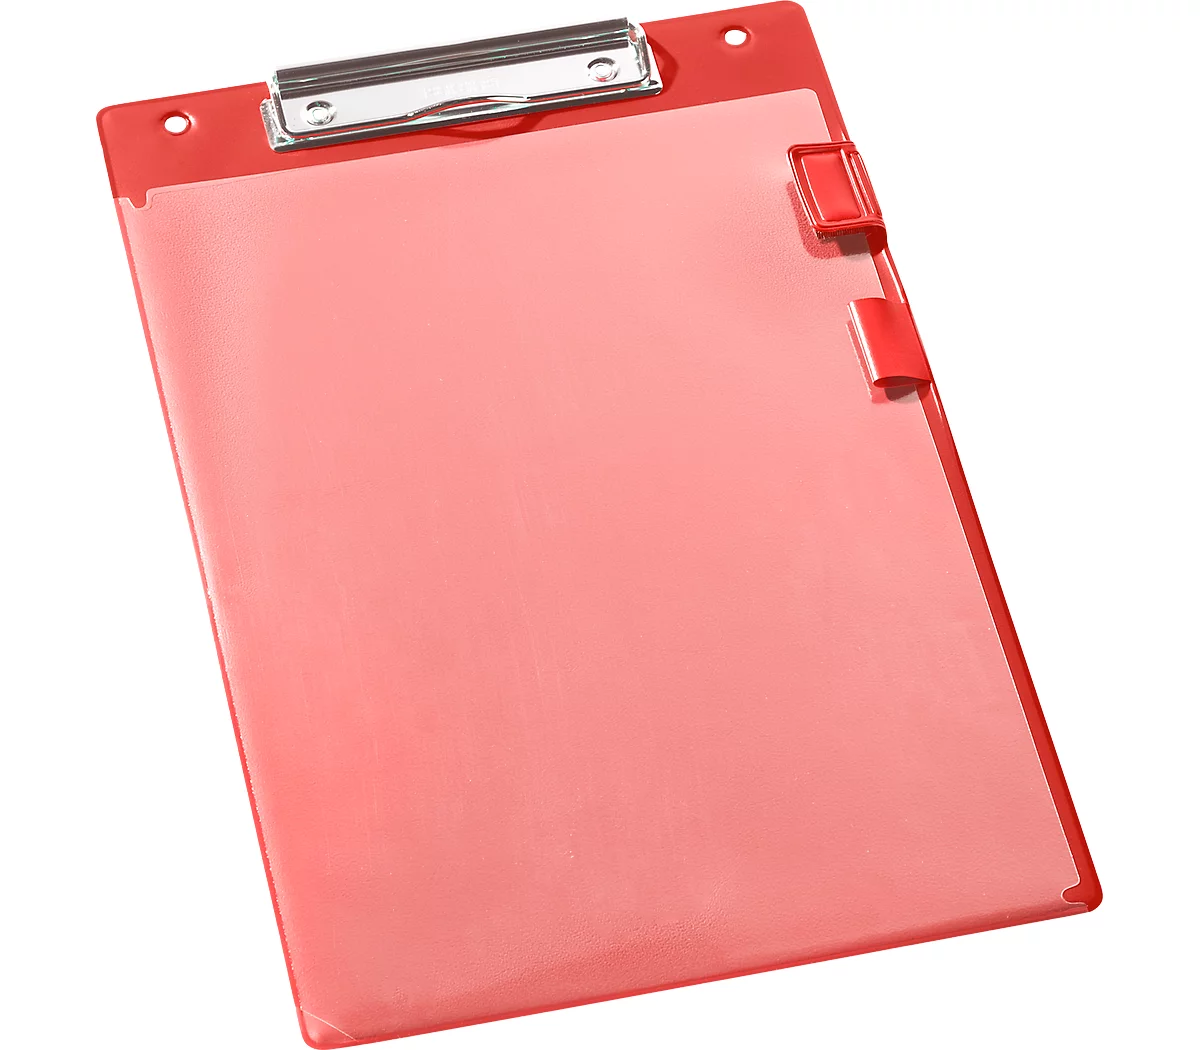 EICHNER Klemmbrett Klemmfix, DIN A4, Kunststoff, mit Klarsichttasche, A4, rot